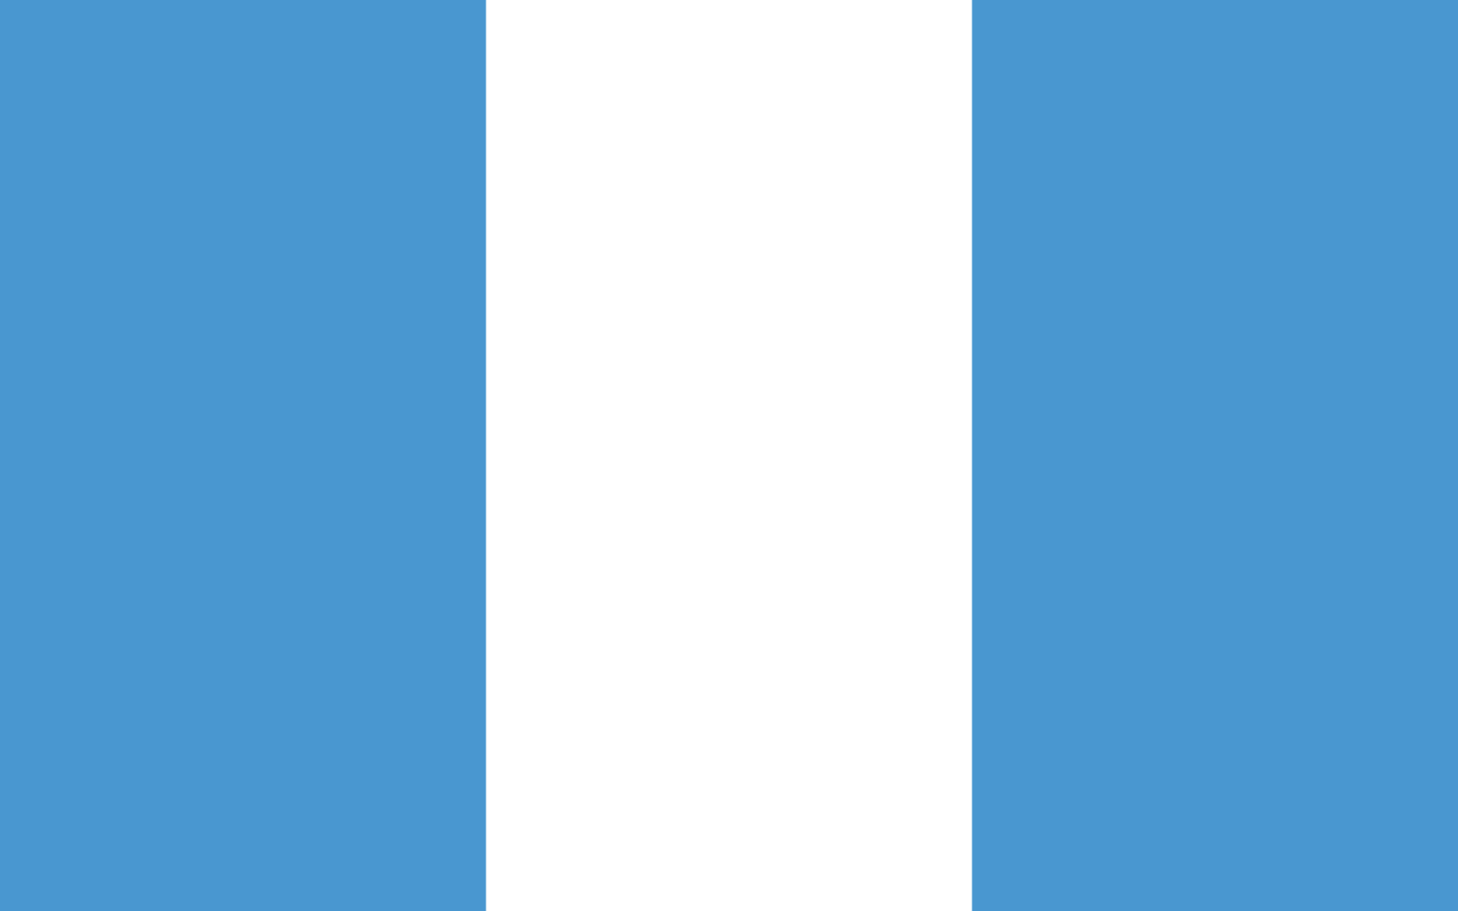 瓜地馬拉國旗